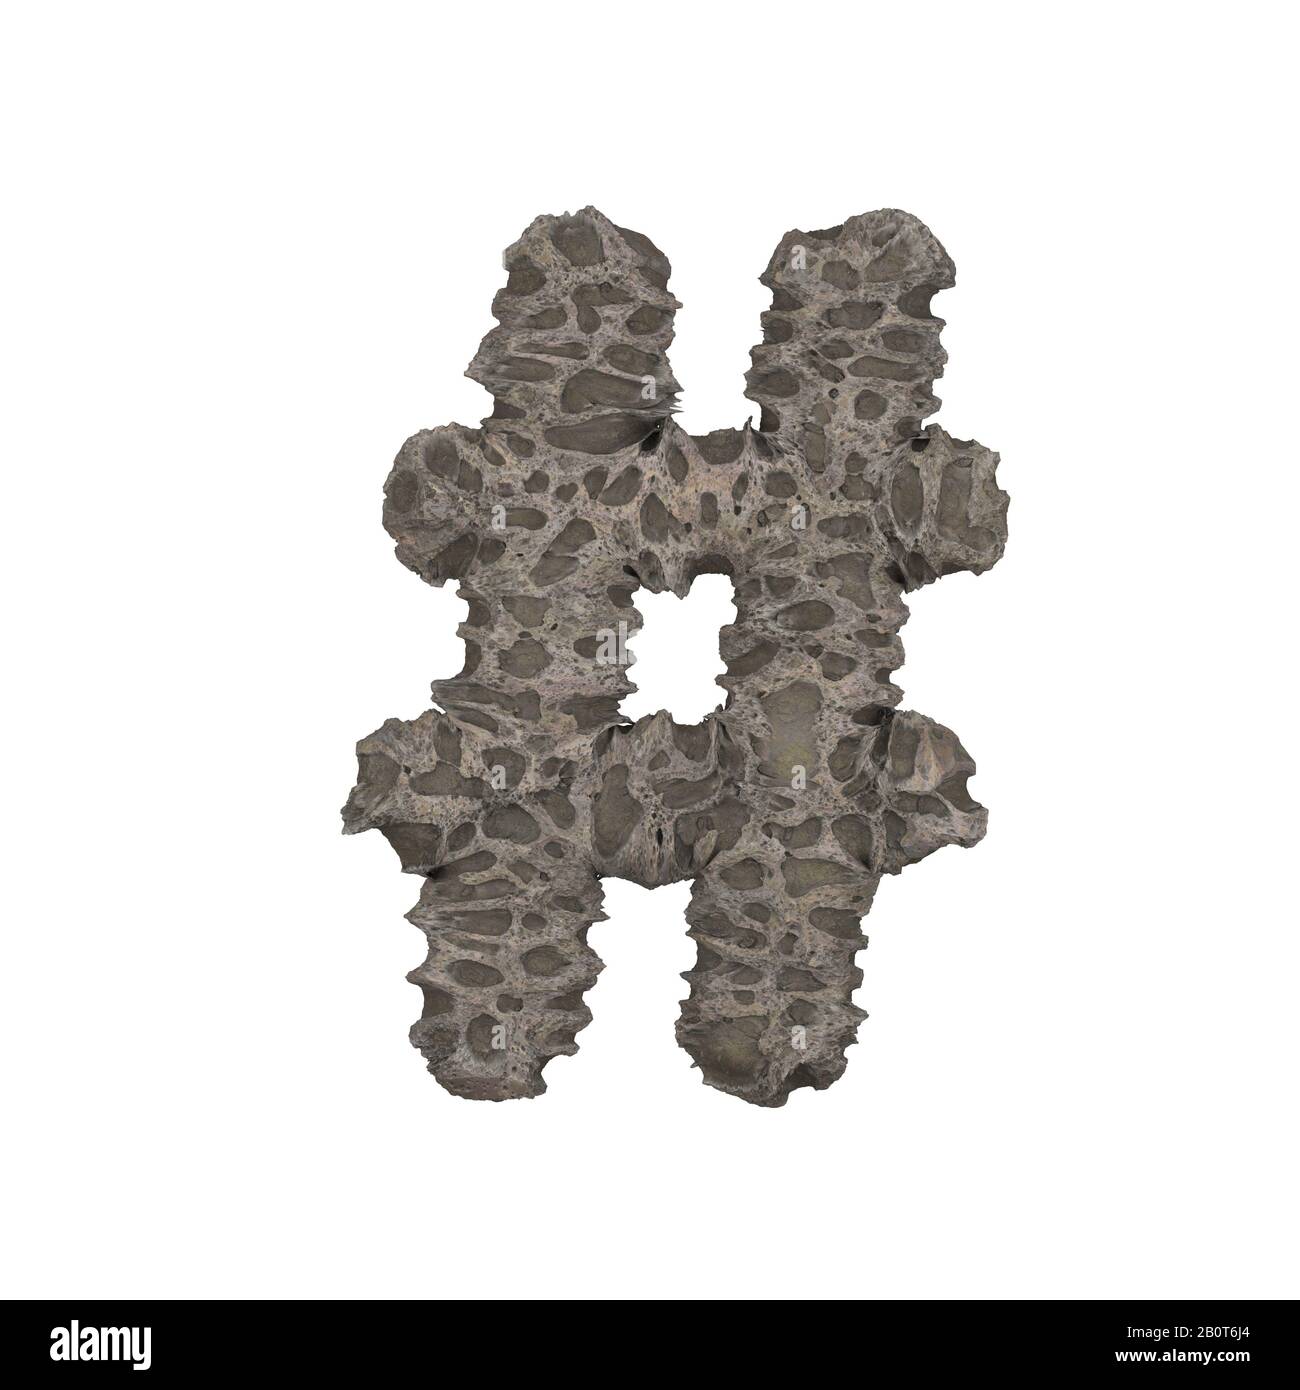 Poröser Steinbrief auf weißem Hintergrund - 3D-Rendering Stockfoto